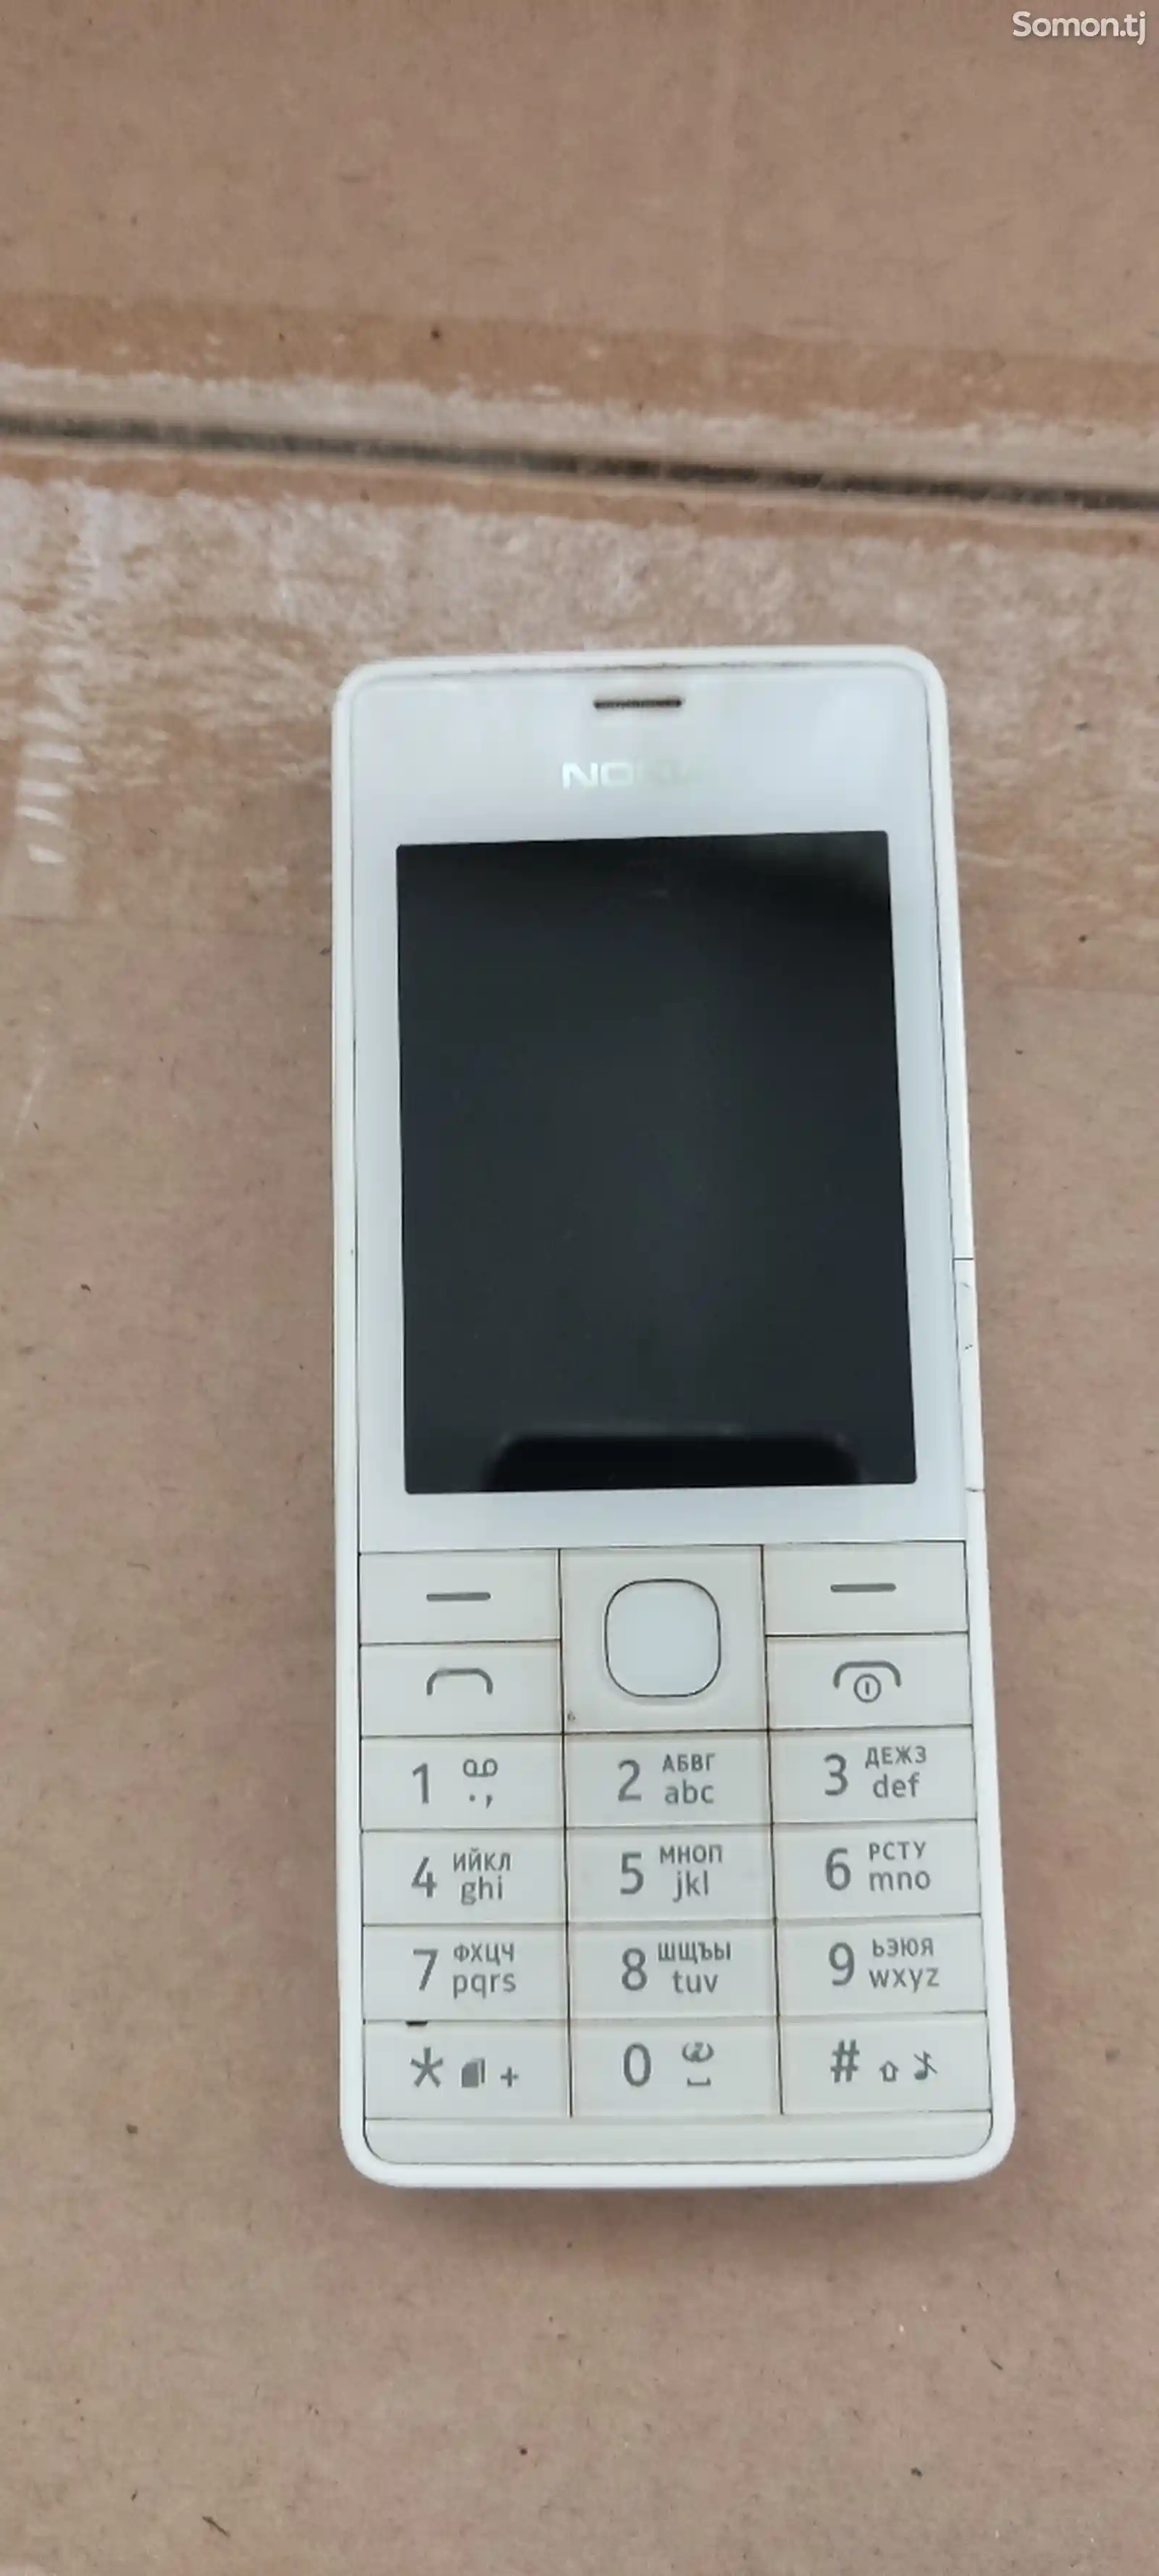 Nokia 515-1